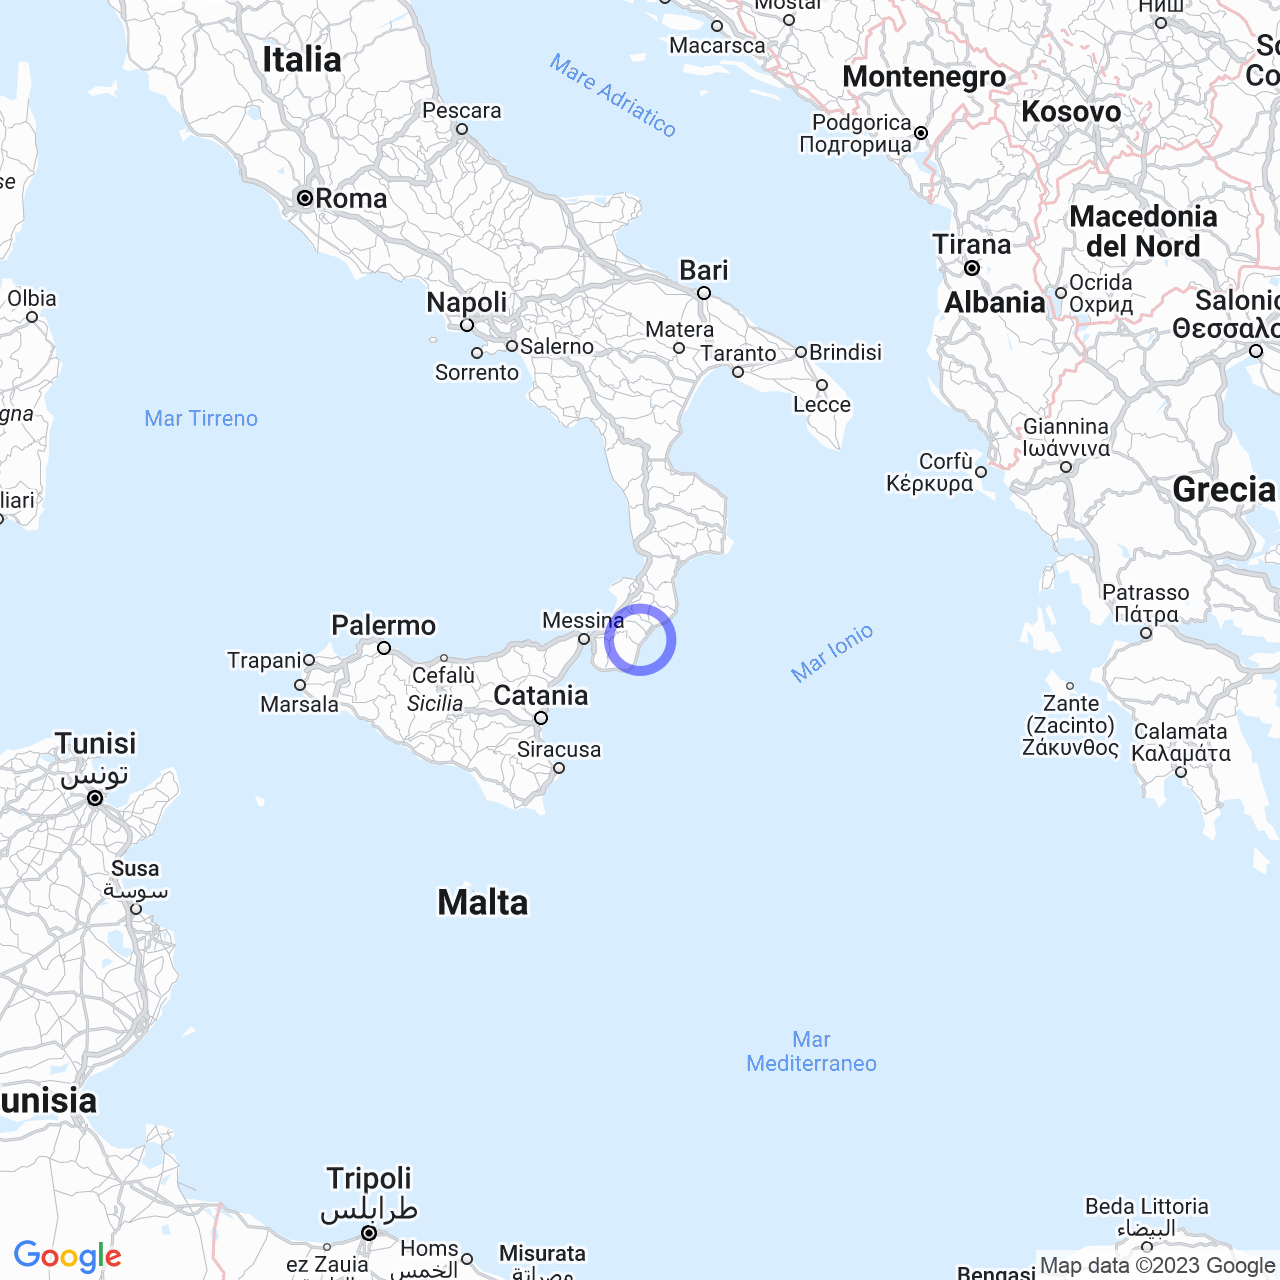 La 'Ndrangheta in provincia di Reggio Calabria: presenza e suddivisione